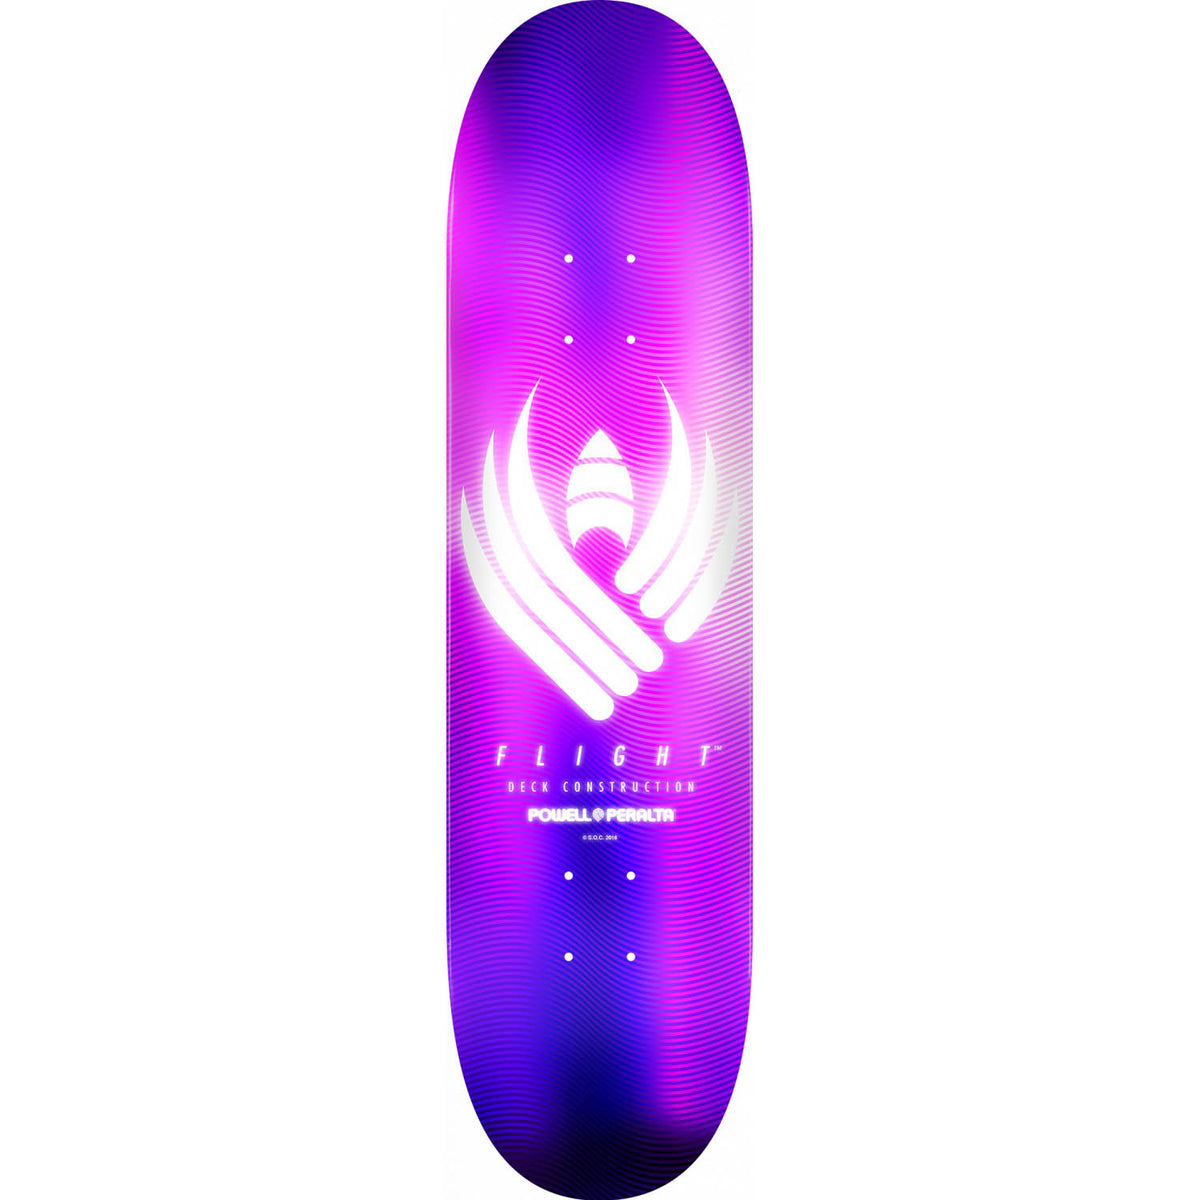 Powell-Peralta Flight Skateboard Deck, Glow Purple, Shape 244, 8.5"